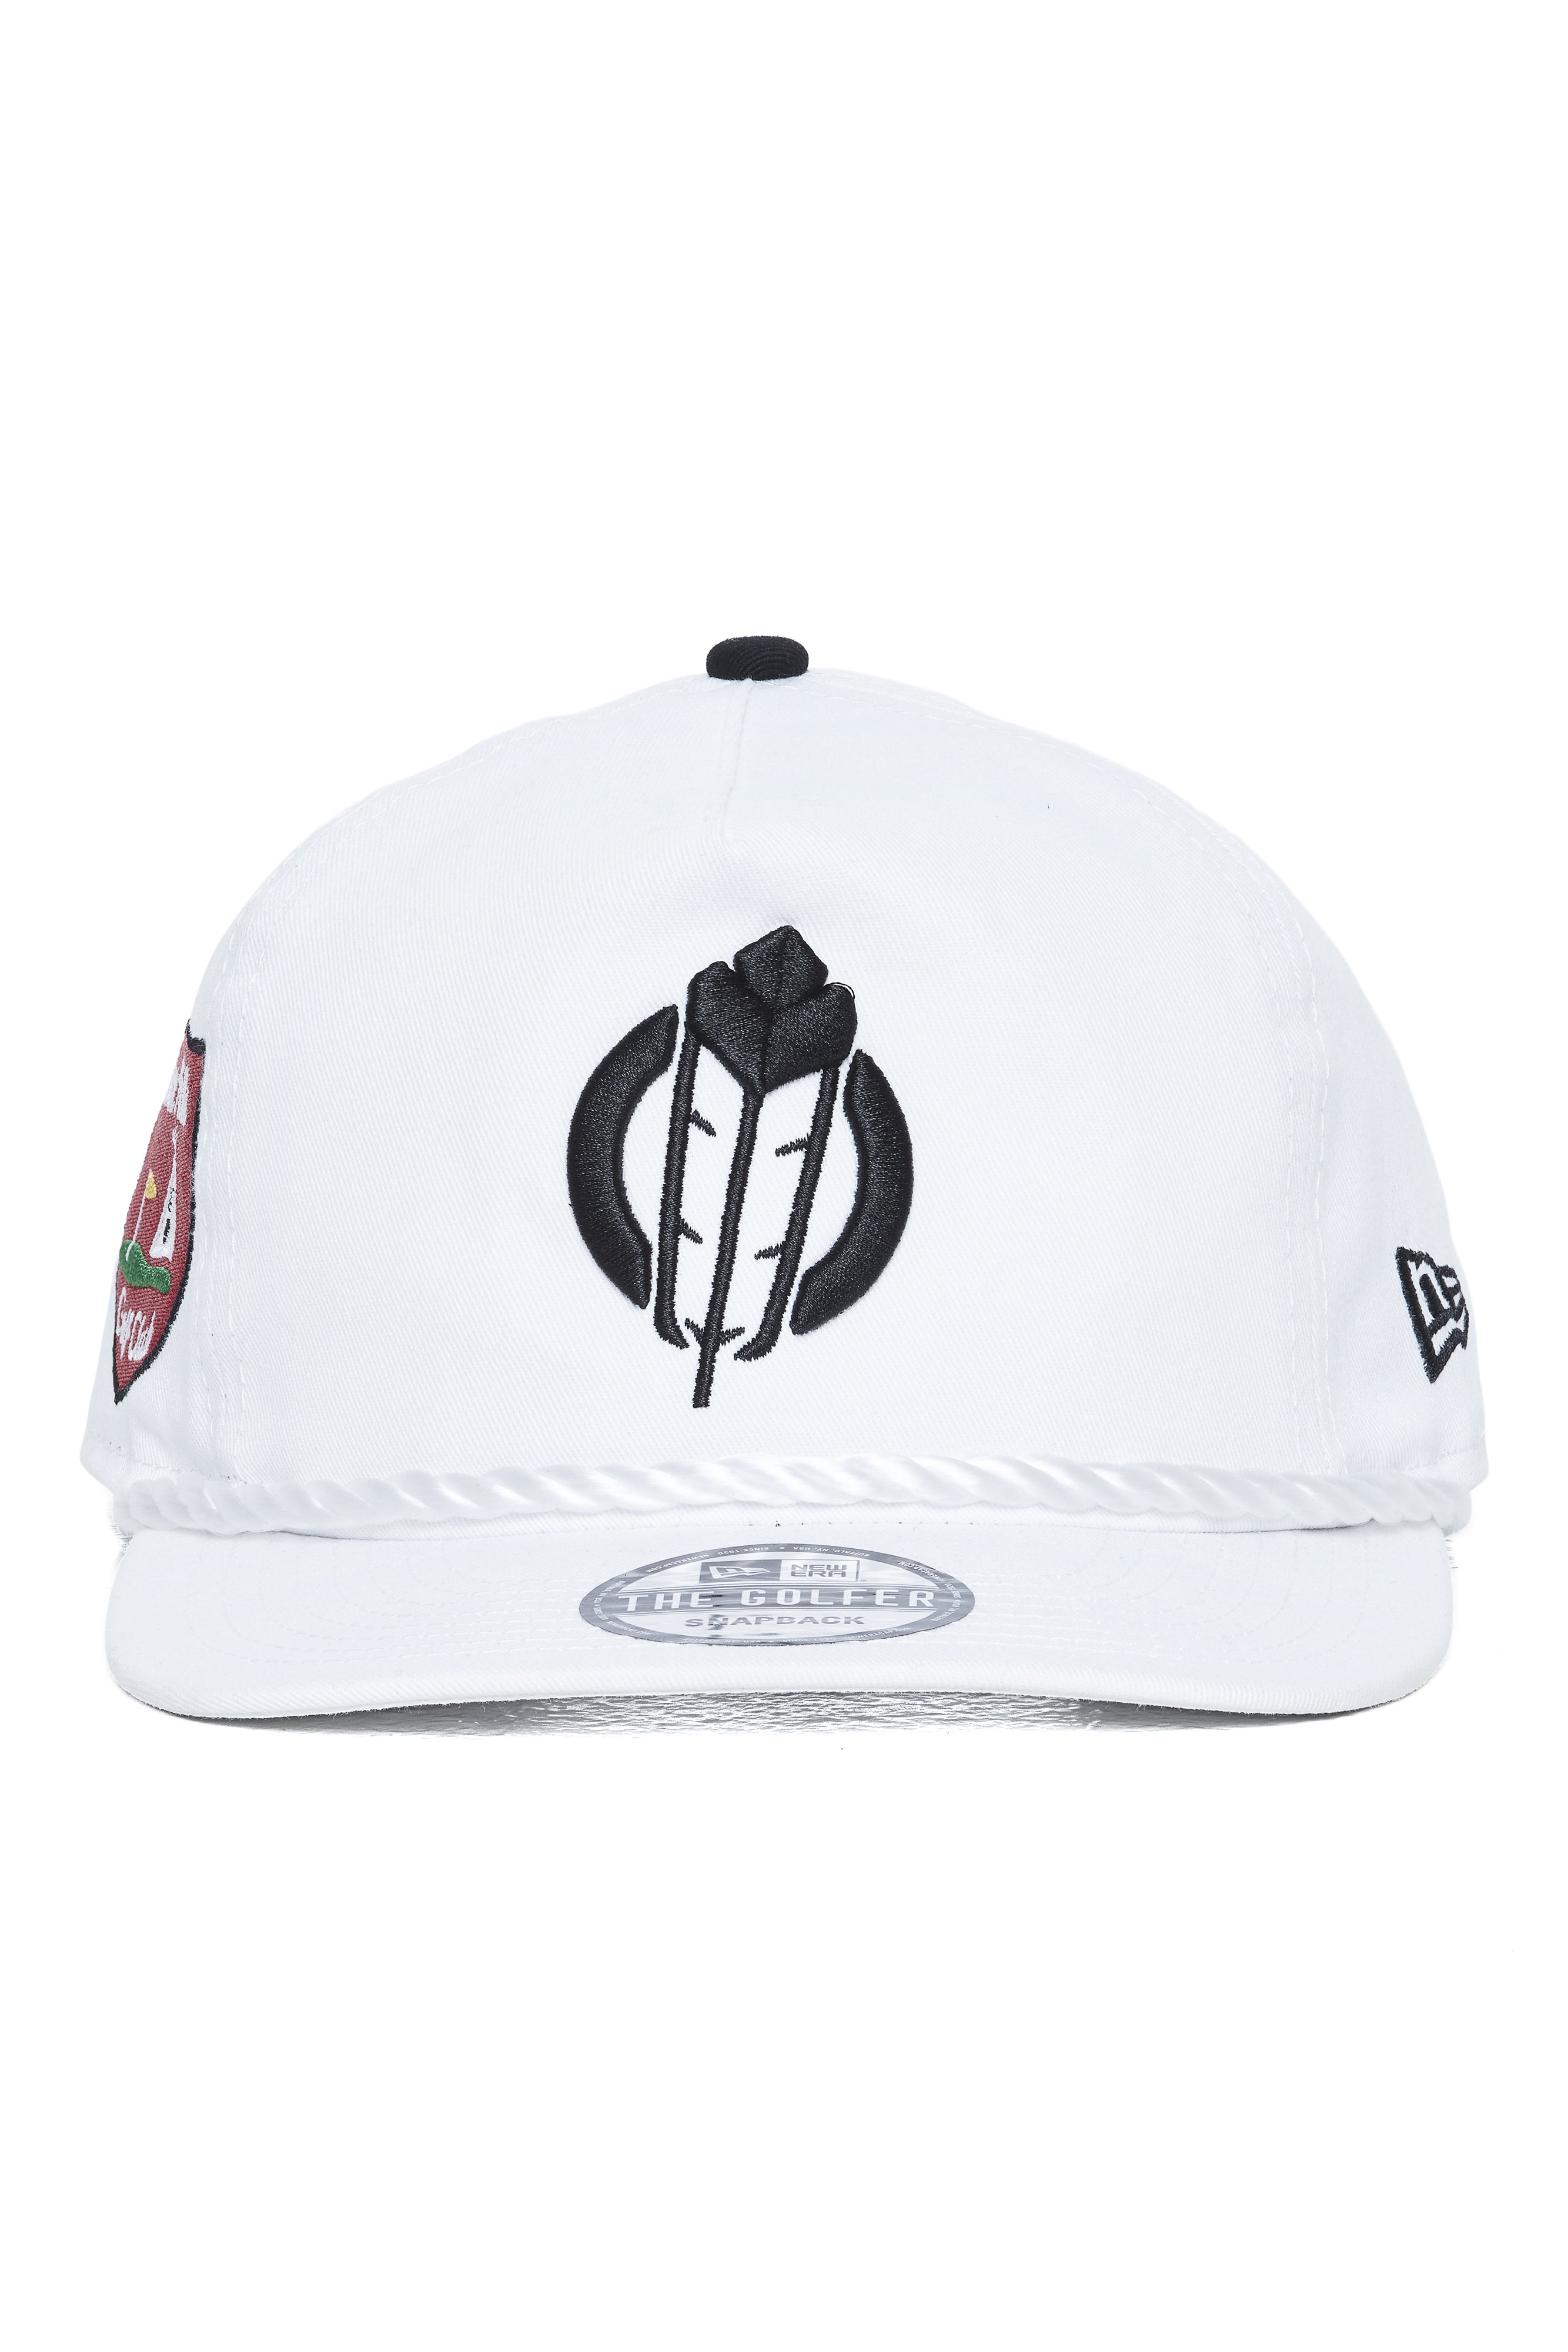 New Era BHGC Golfer Hat - White